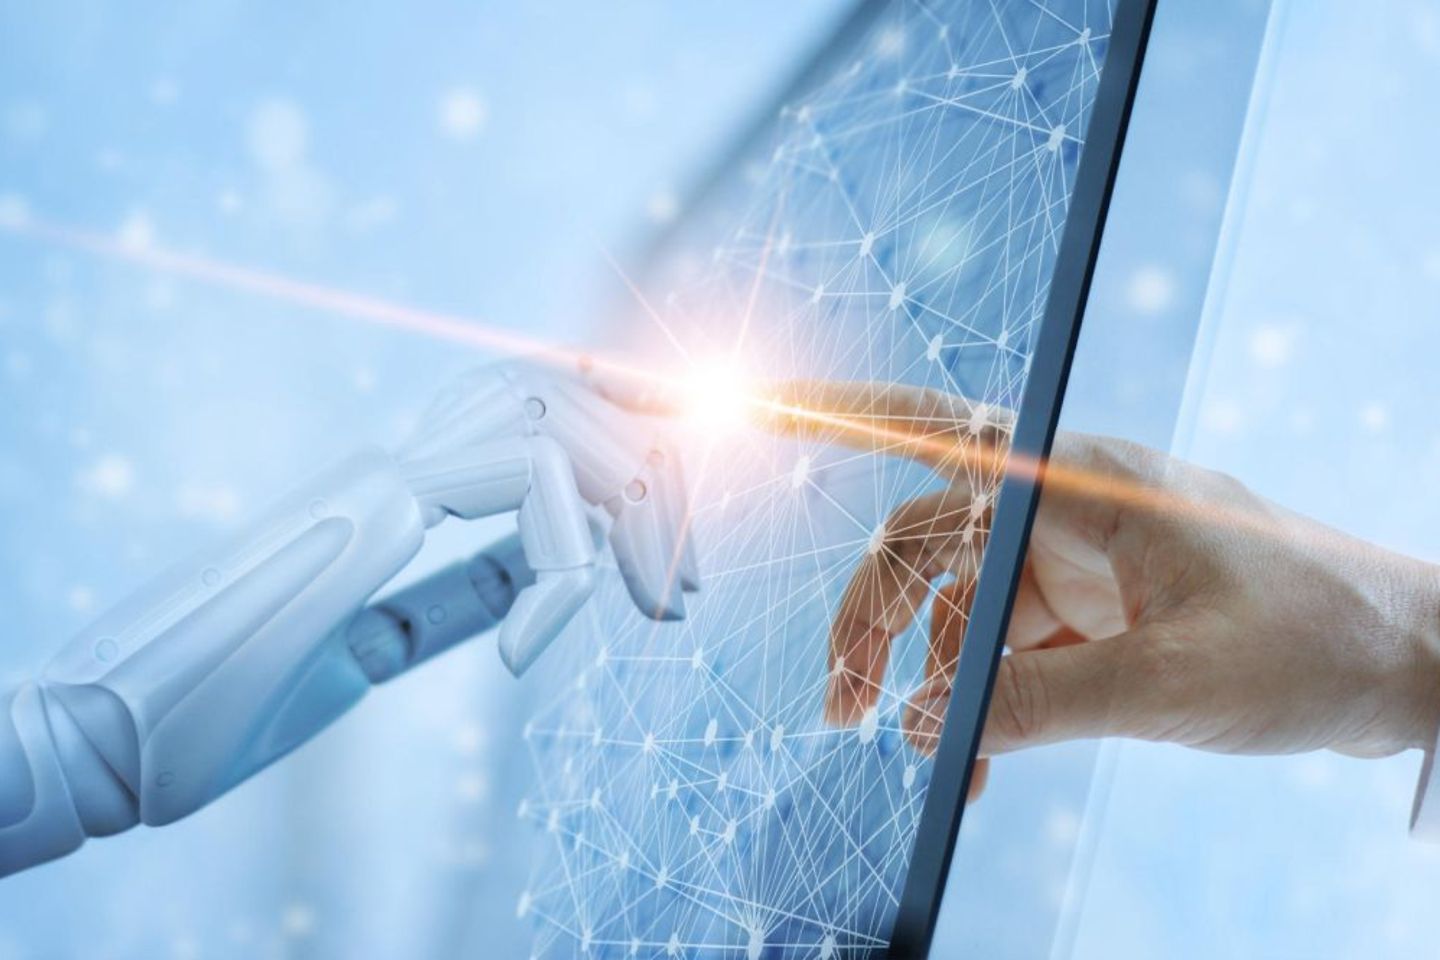 Eine menschliche Hand und eine Roboterhand berühren sich im Display eines virtuellen Tablets